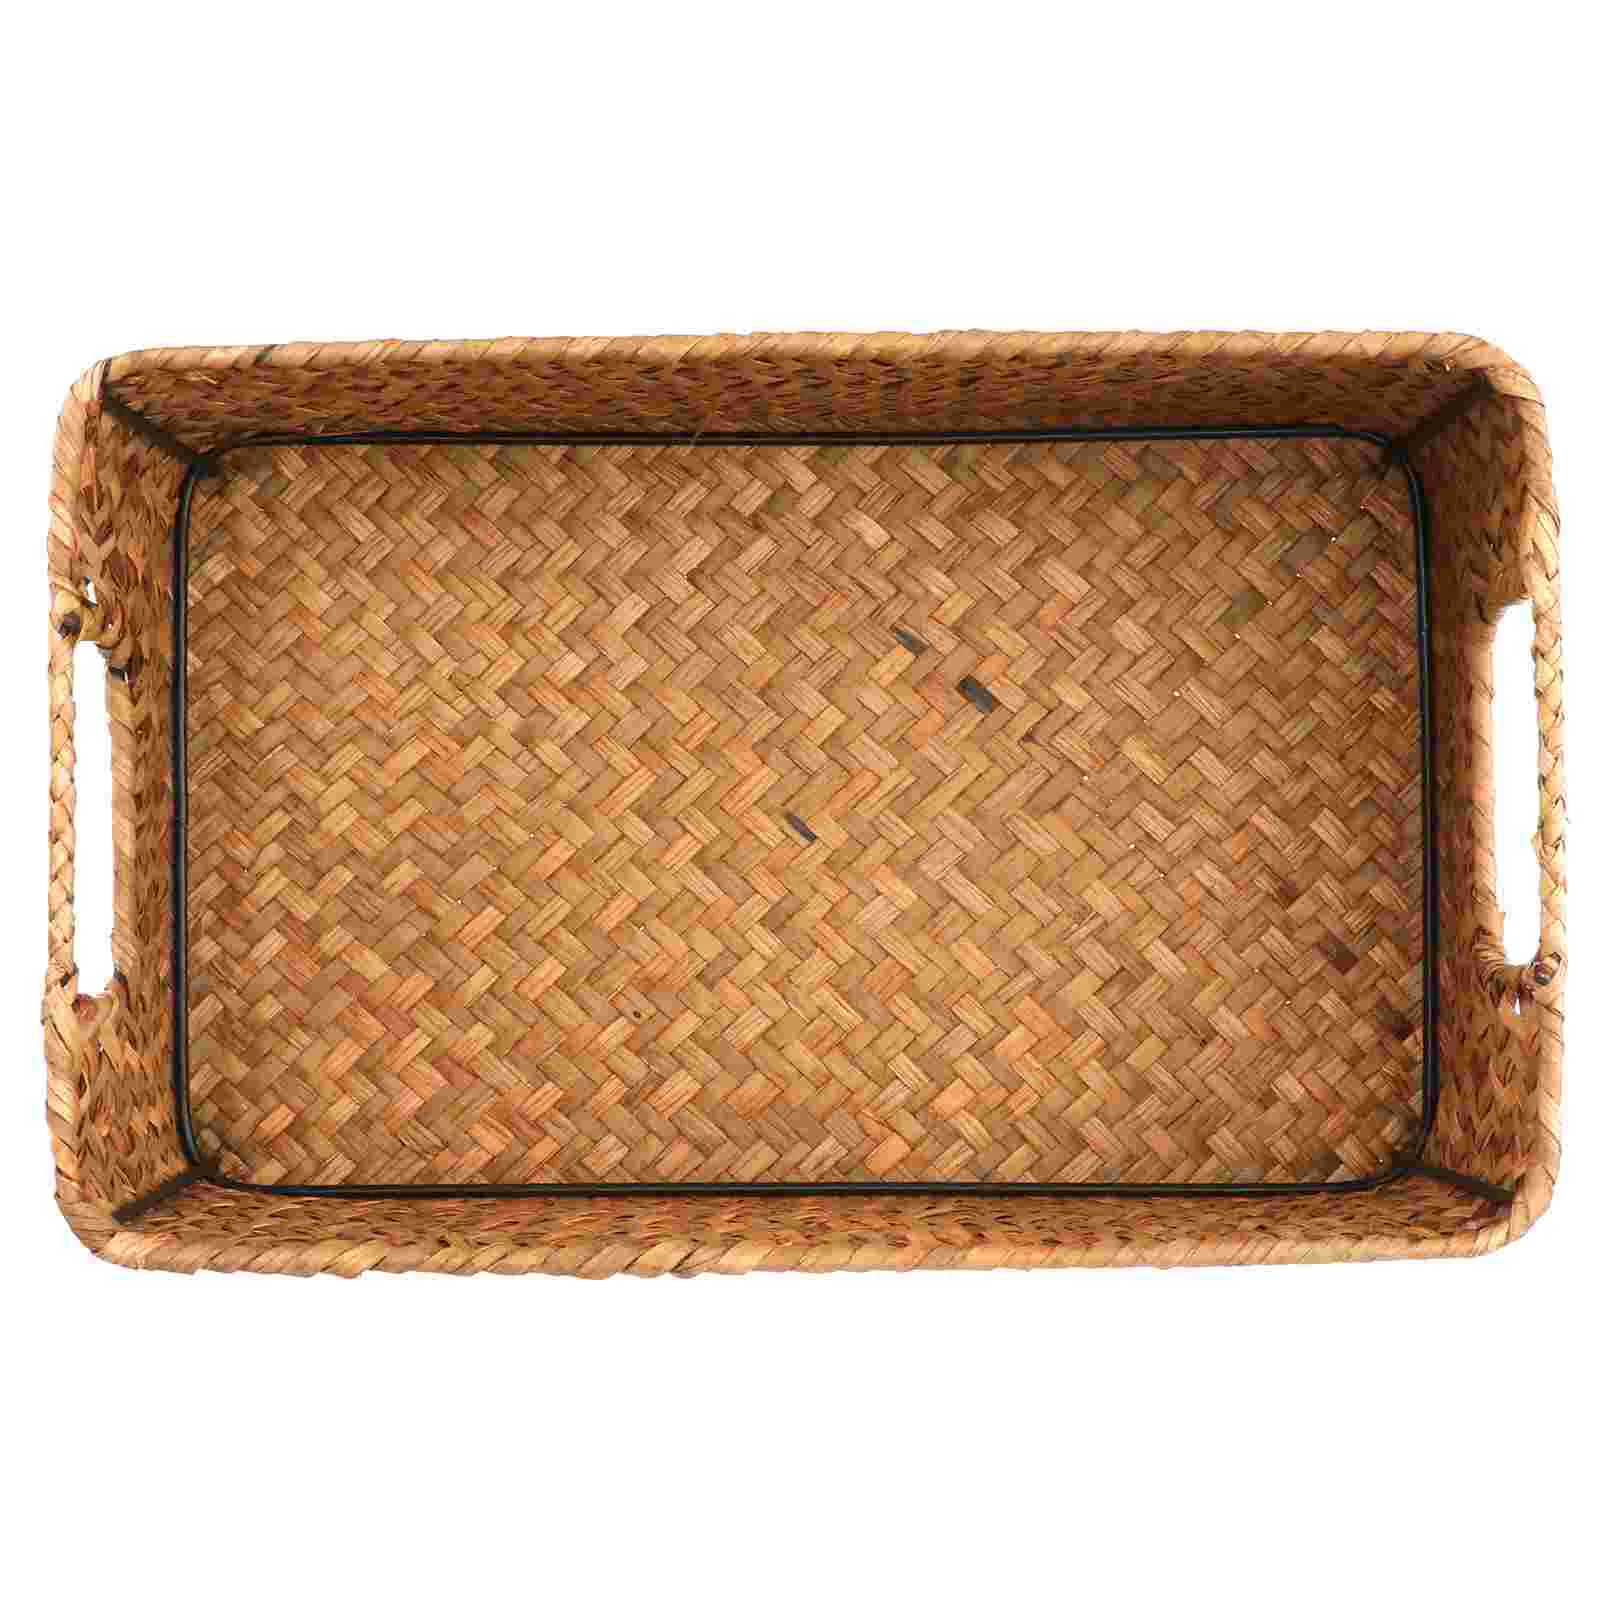 

Woven Shelf Baskets Storage Baskets Seagrass Wicker Baskets Makeup Holder Organizer Storage Bins Box Container Sundries